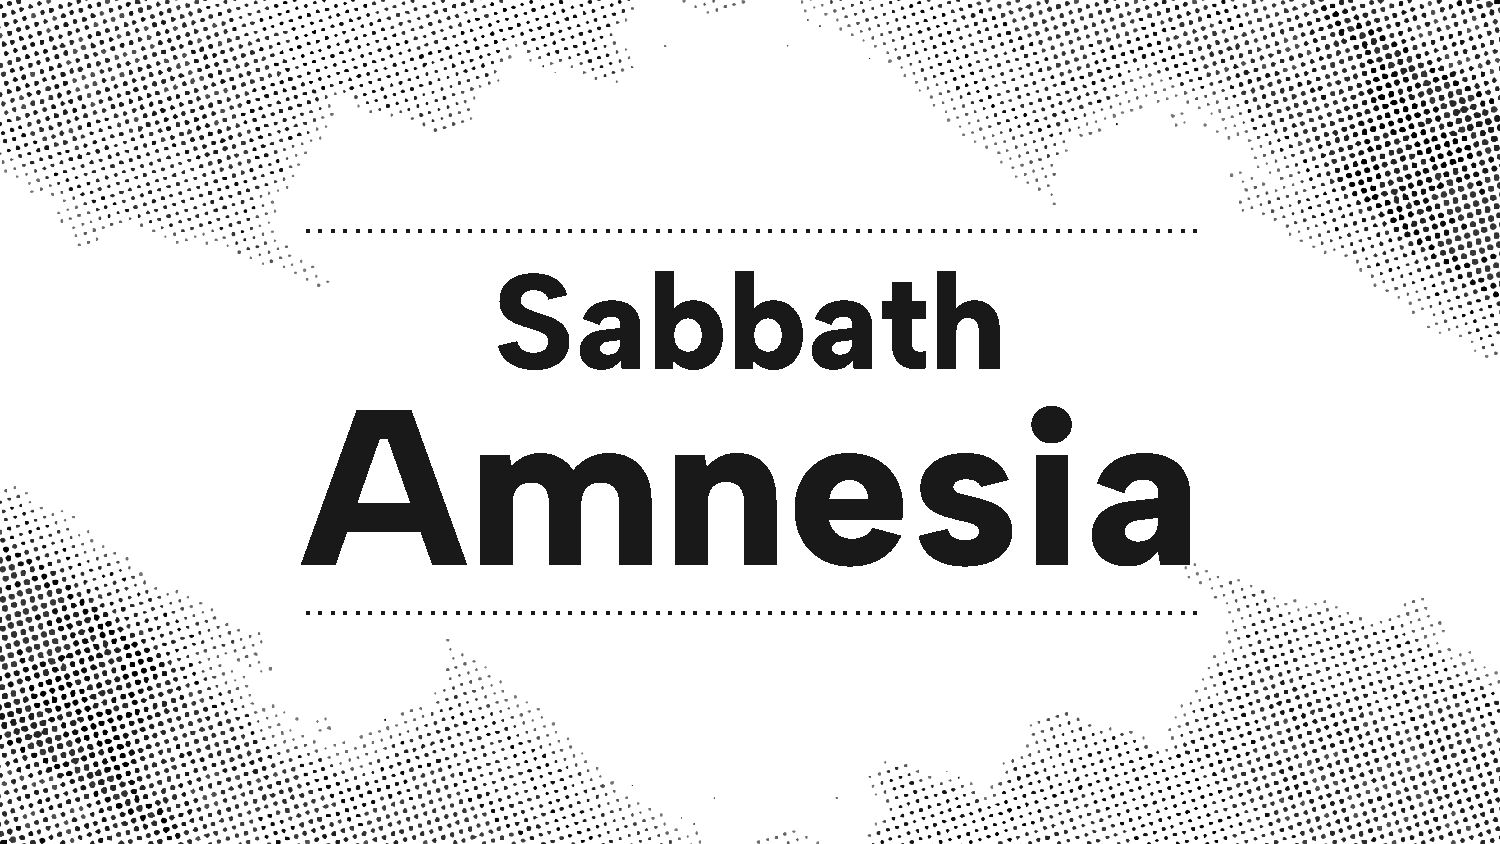 Sabbath Amnesia